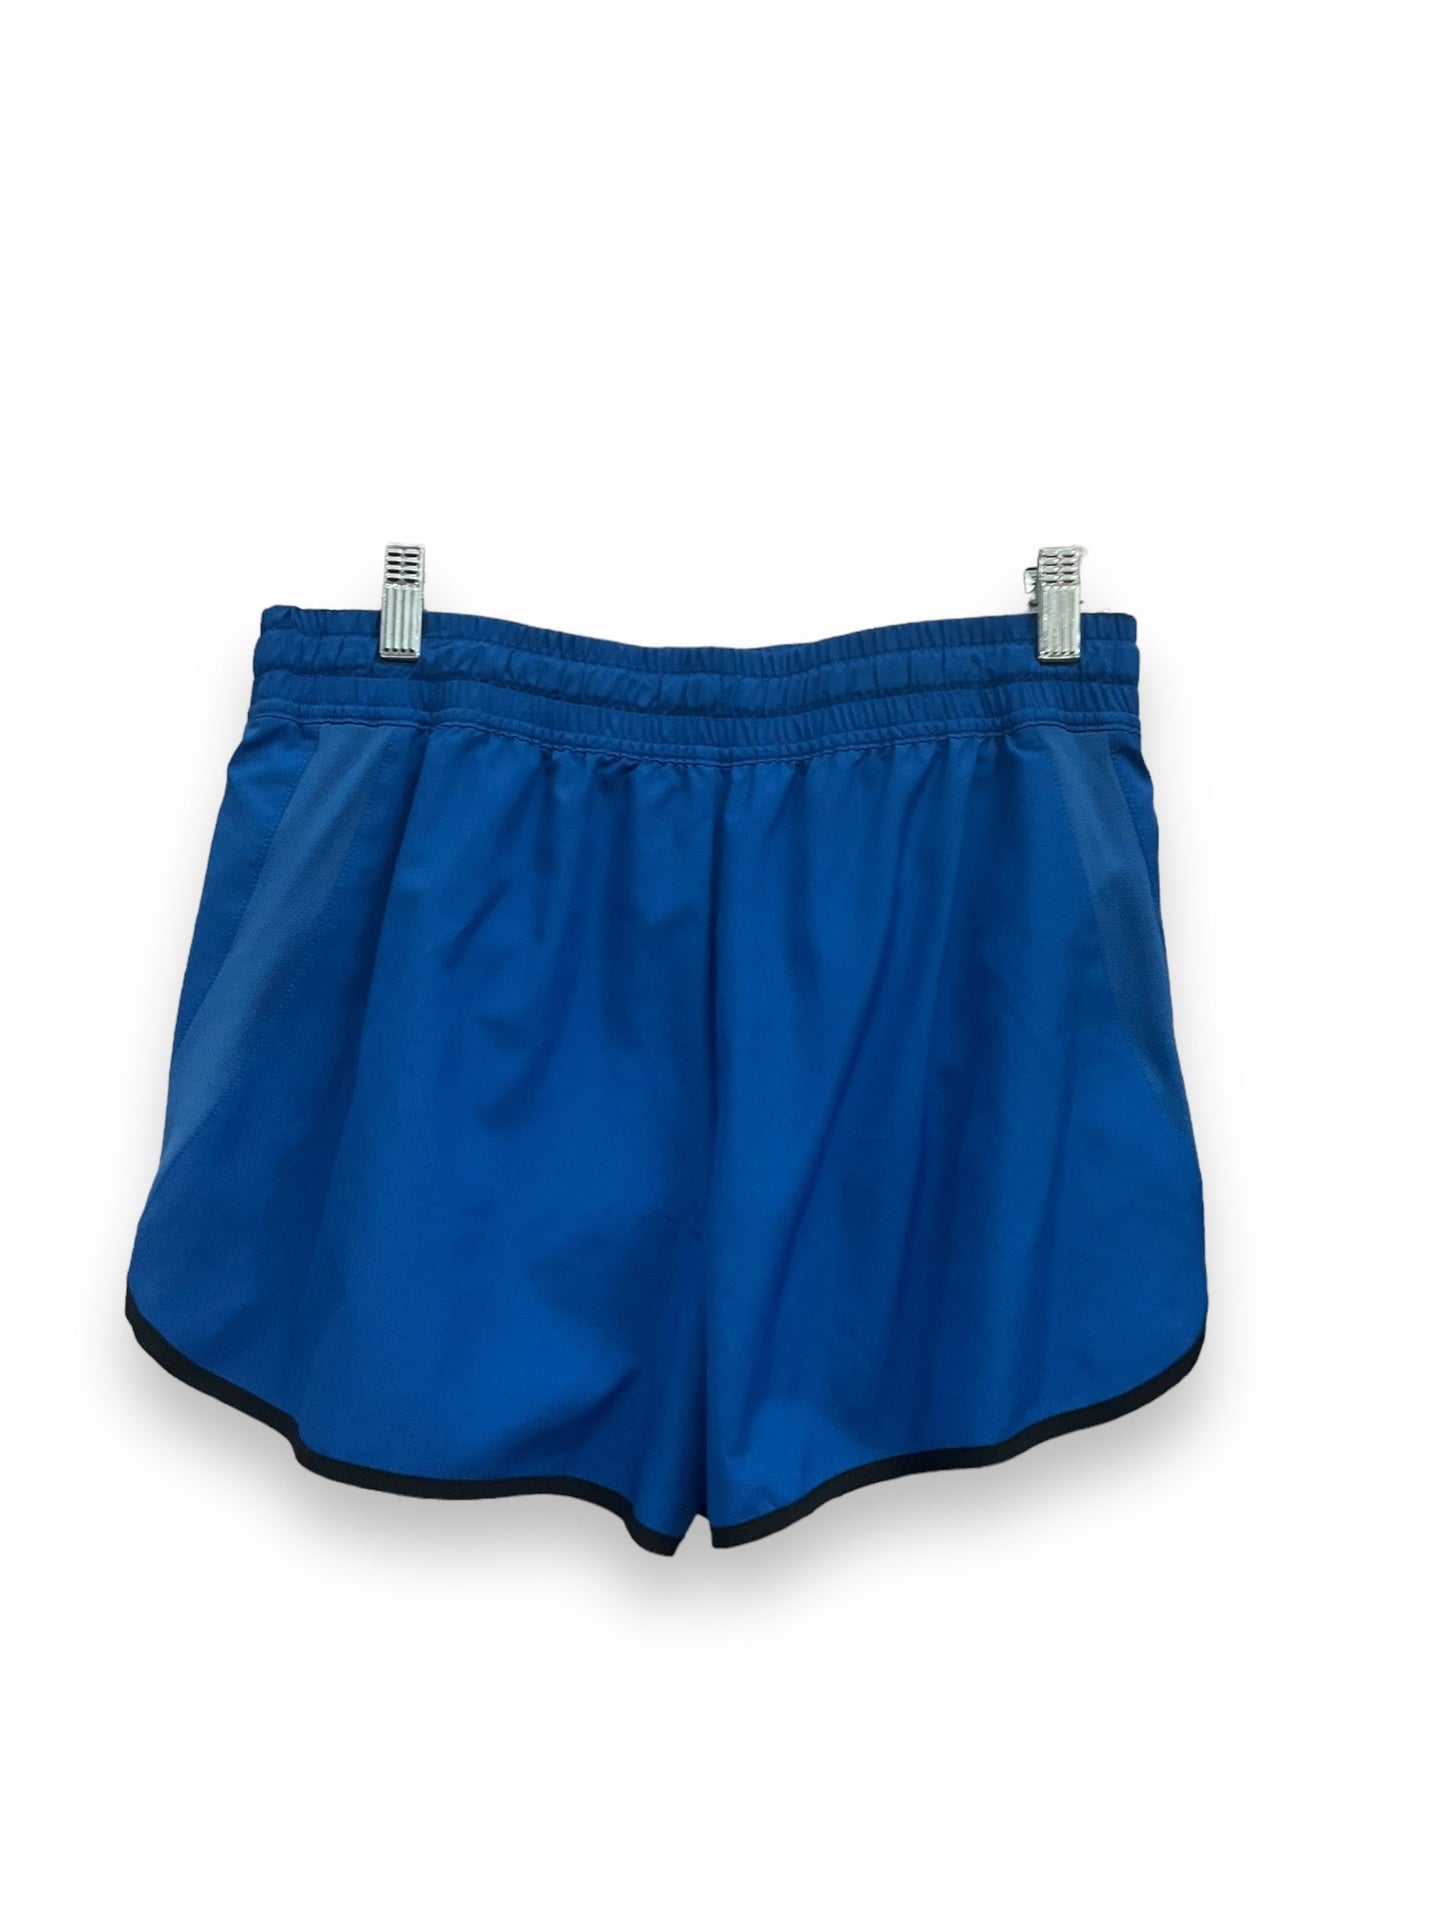 Blue Athletic Shorts Fila, Size S